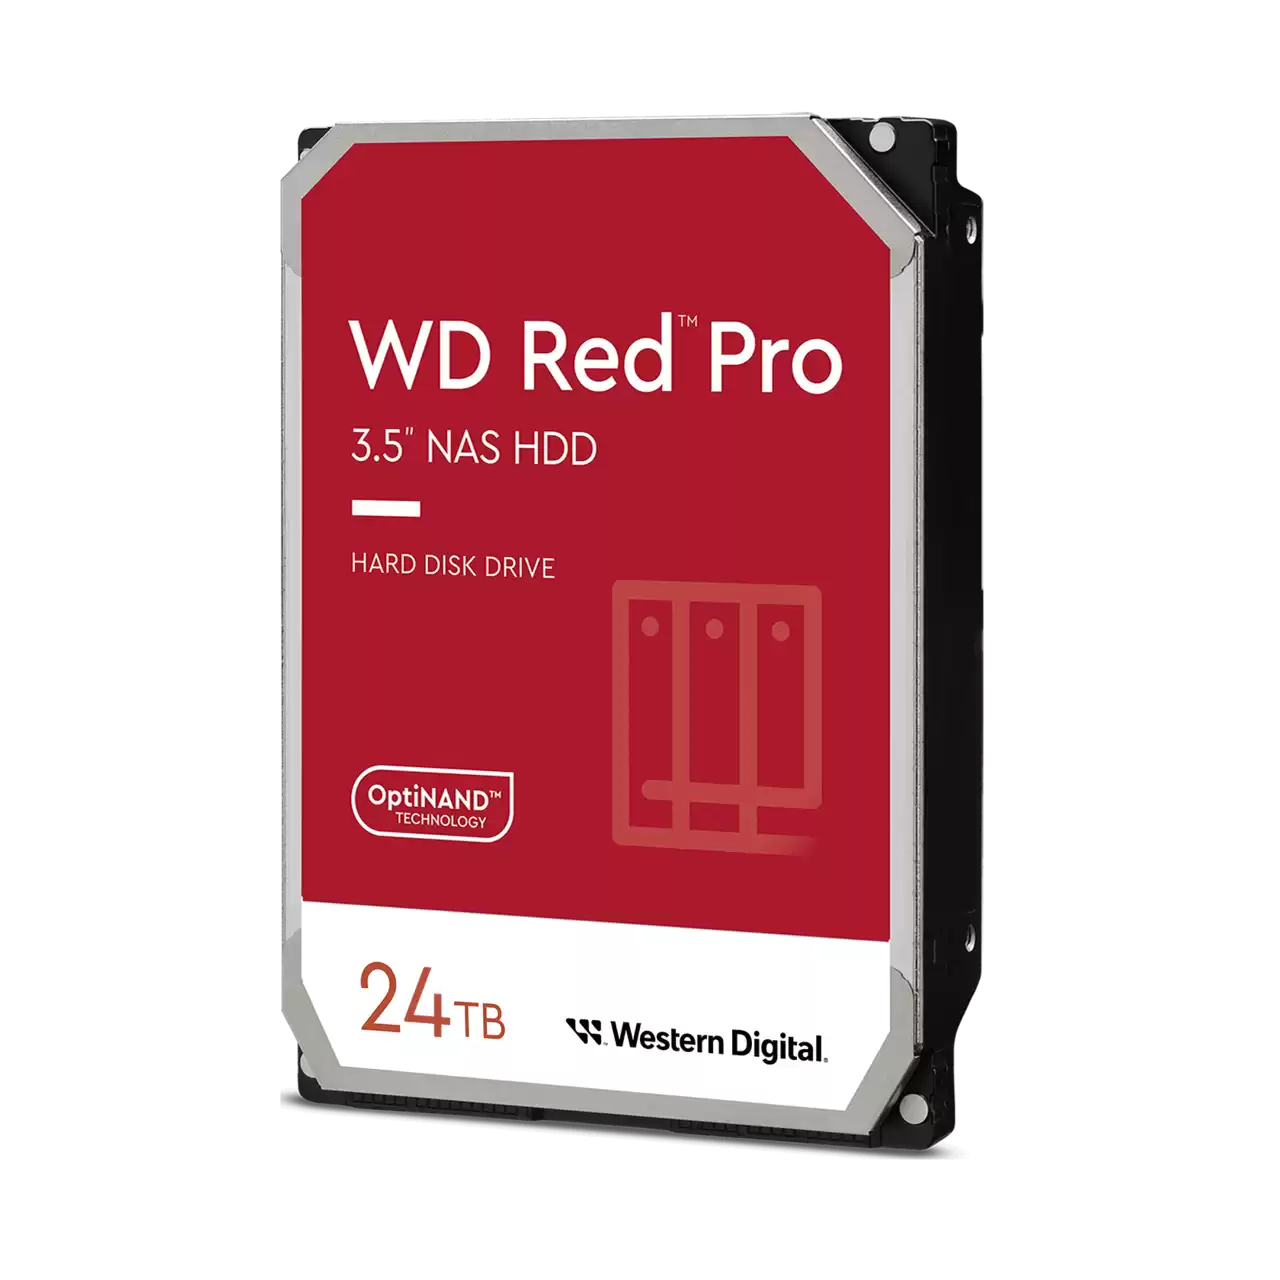 WD Red Pro 24 To est disponible en France